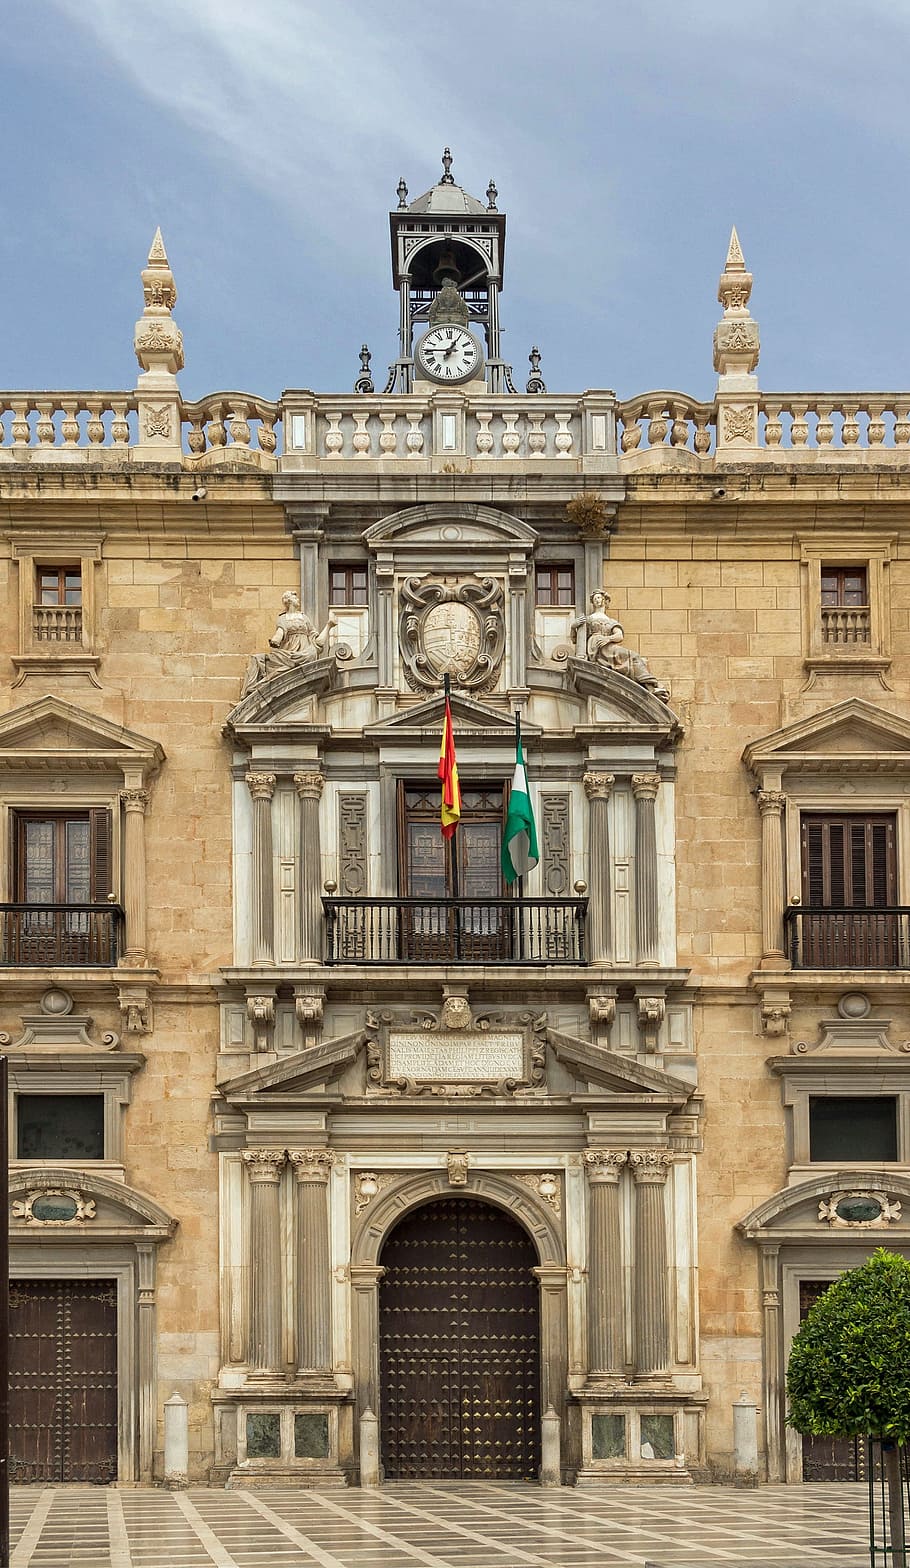 Андалусия, Испания, Верховный суд, здание, правительство, площадь, небо, облака, фасад, архитектура